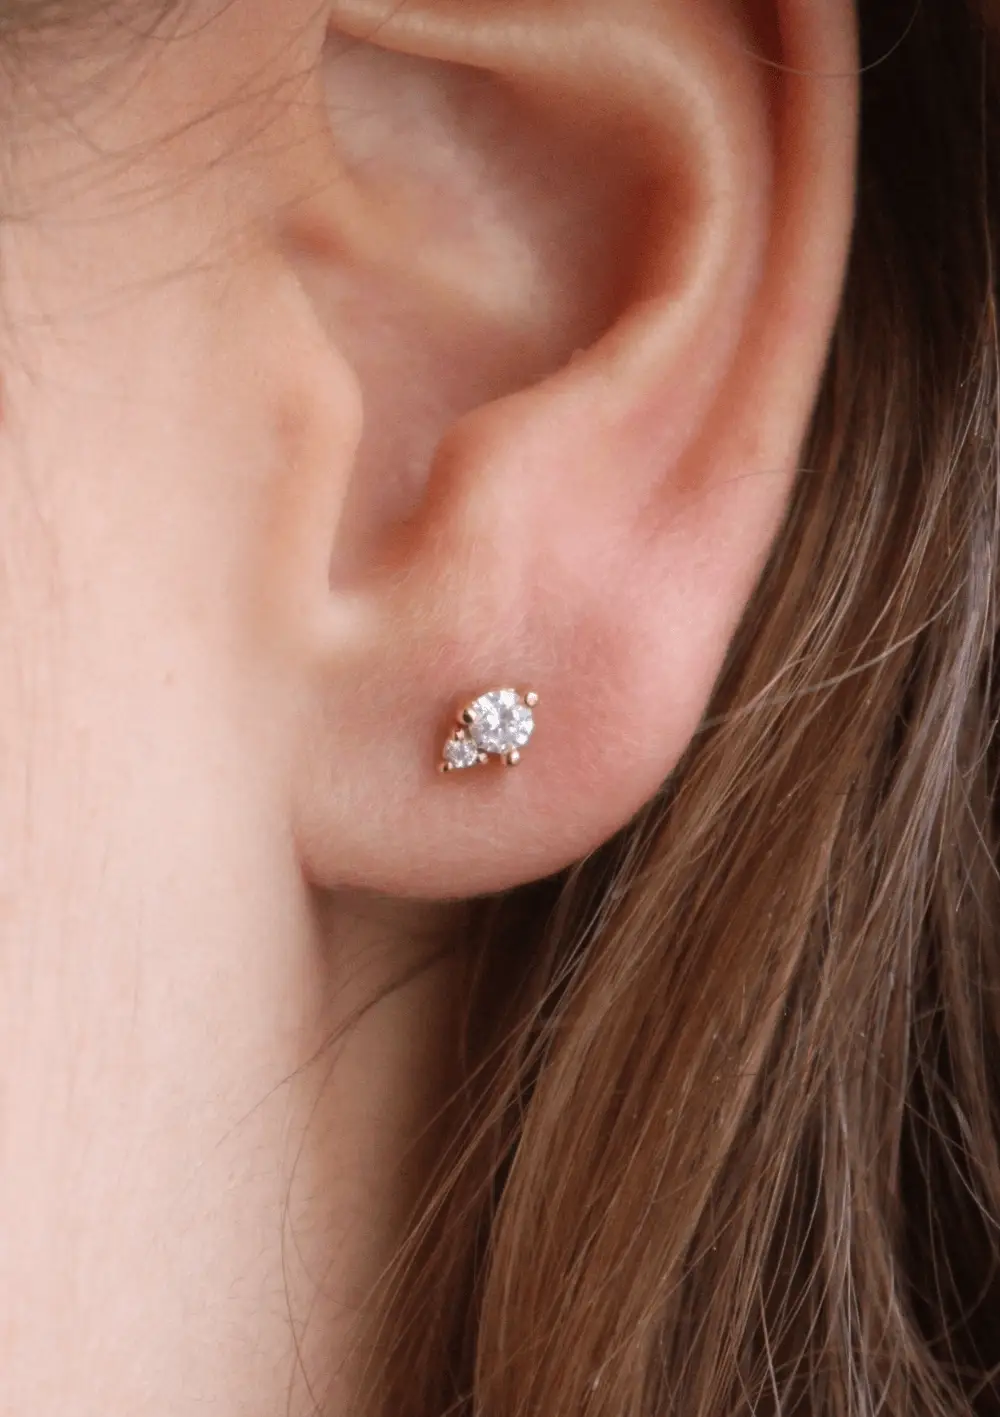 Filae earrings - waekura